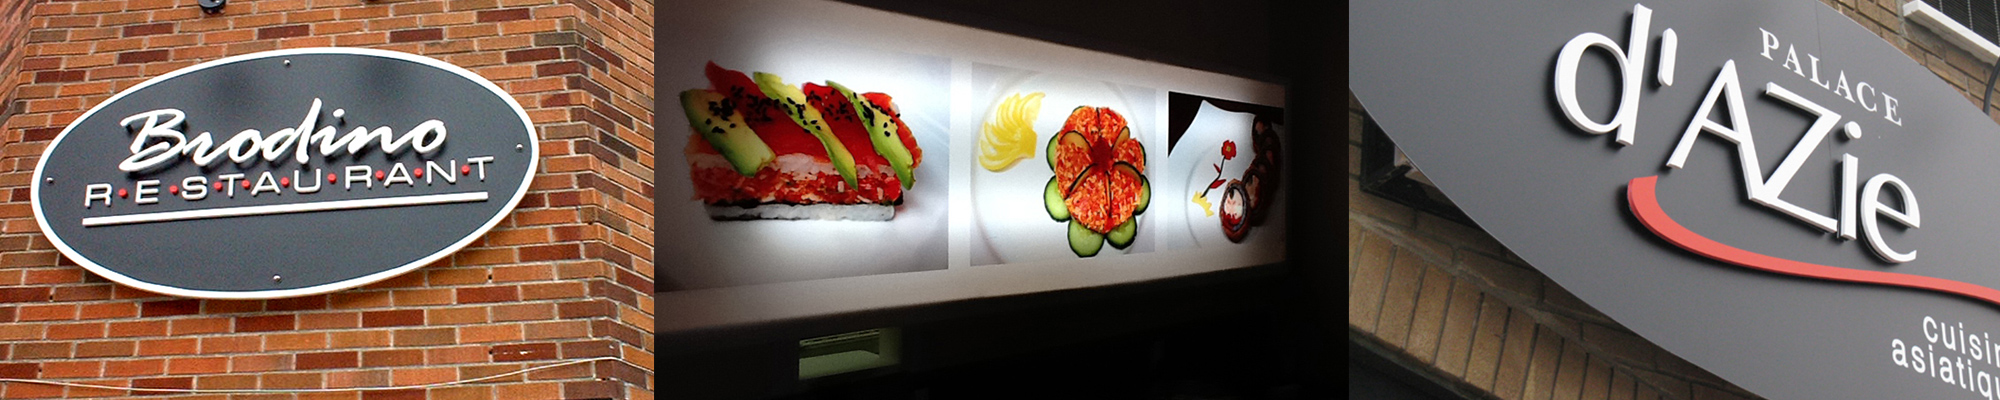 Enseignes 3D extérieurs ; restaurant Brodino, Sushi bonsai